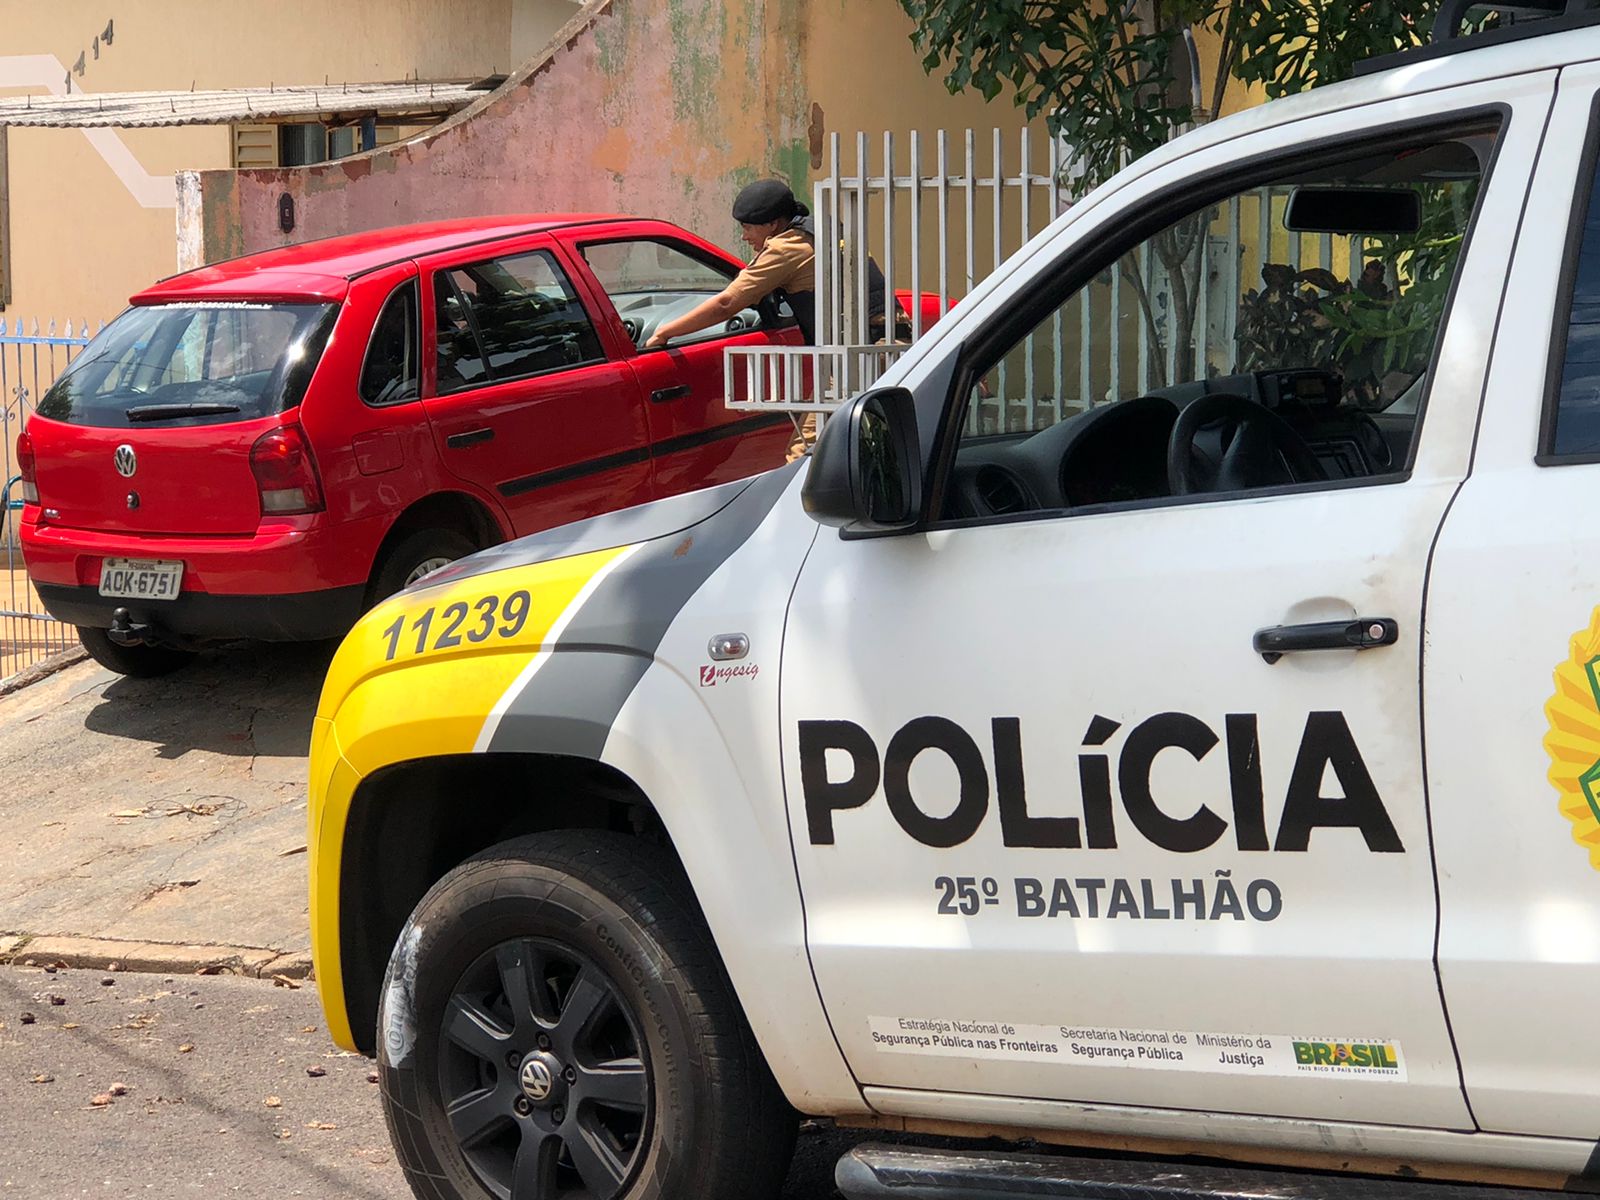 Jornal Ilustrado - Gestante é socorrida após ser atropelada no Ouro Branco, em Umuarama